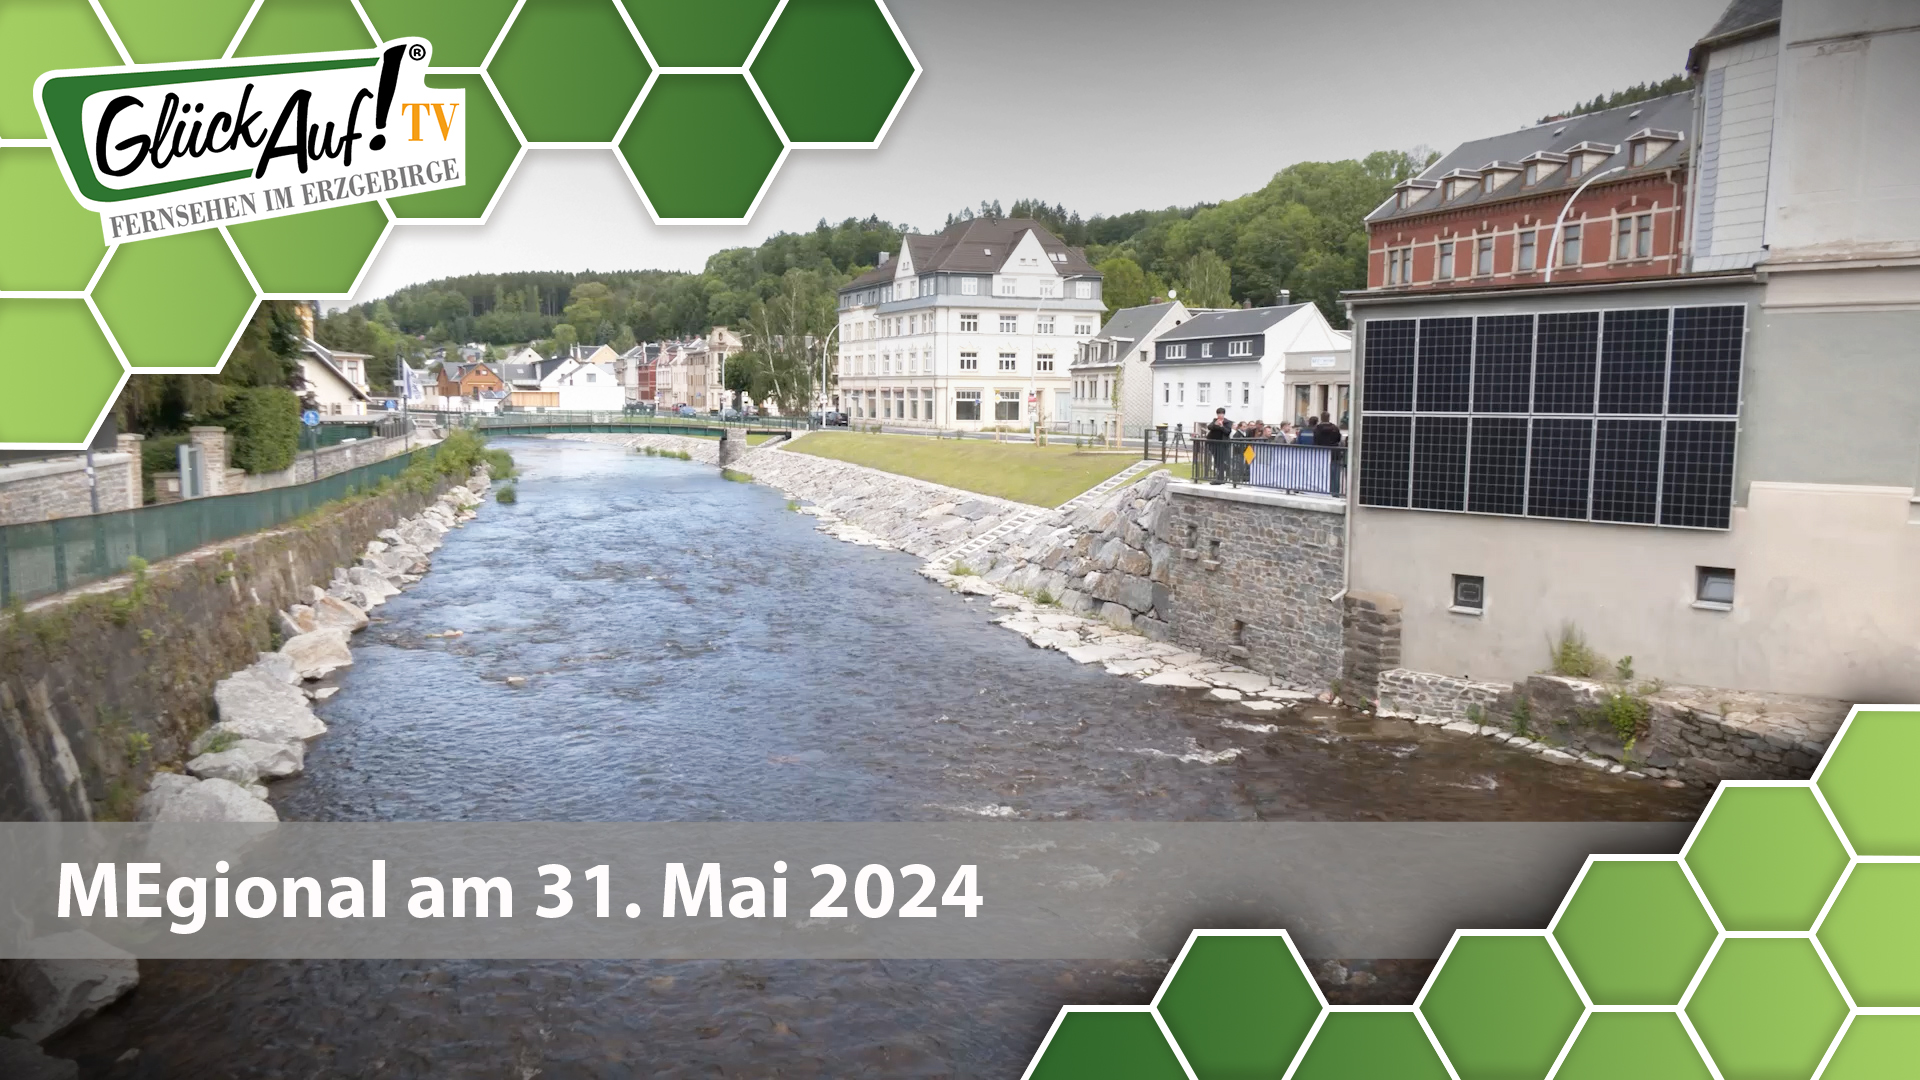 MEgional am 31. Mai 2024 mit den abgeschlossenen Bauarbeiten der Hochwasserschutzlinie in Olbernhau 